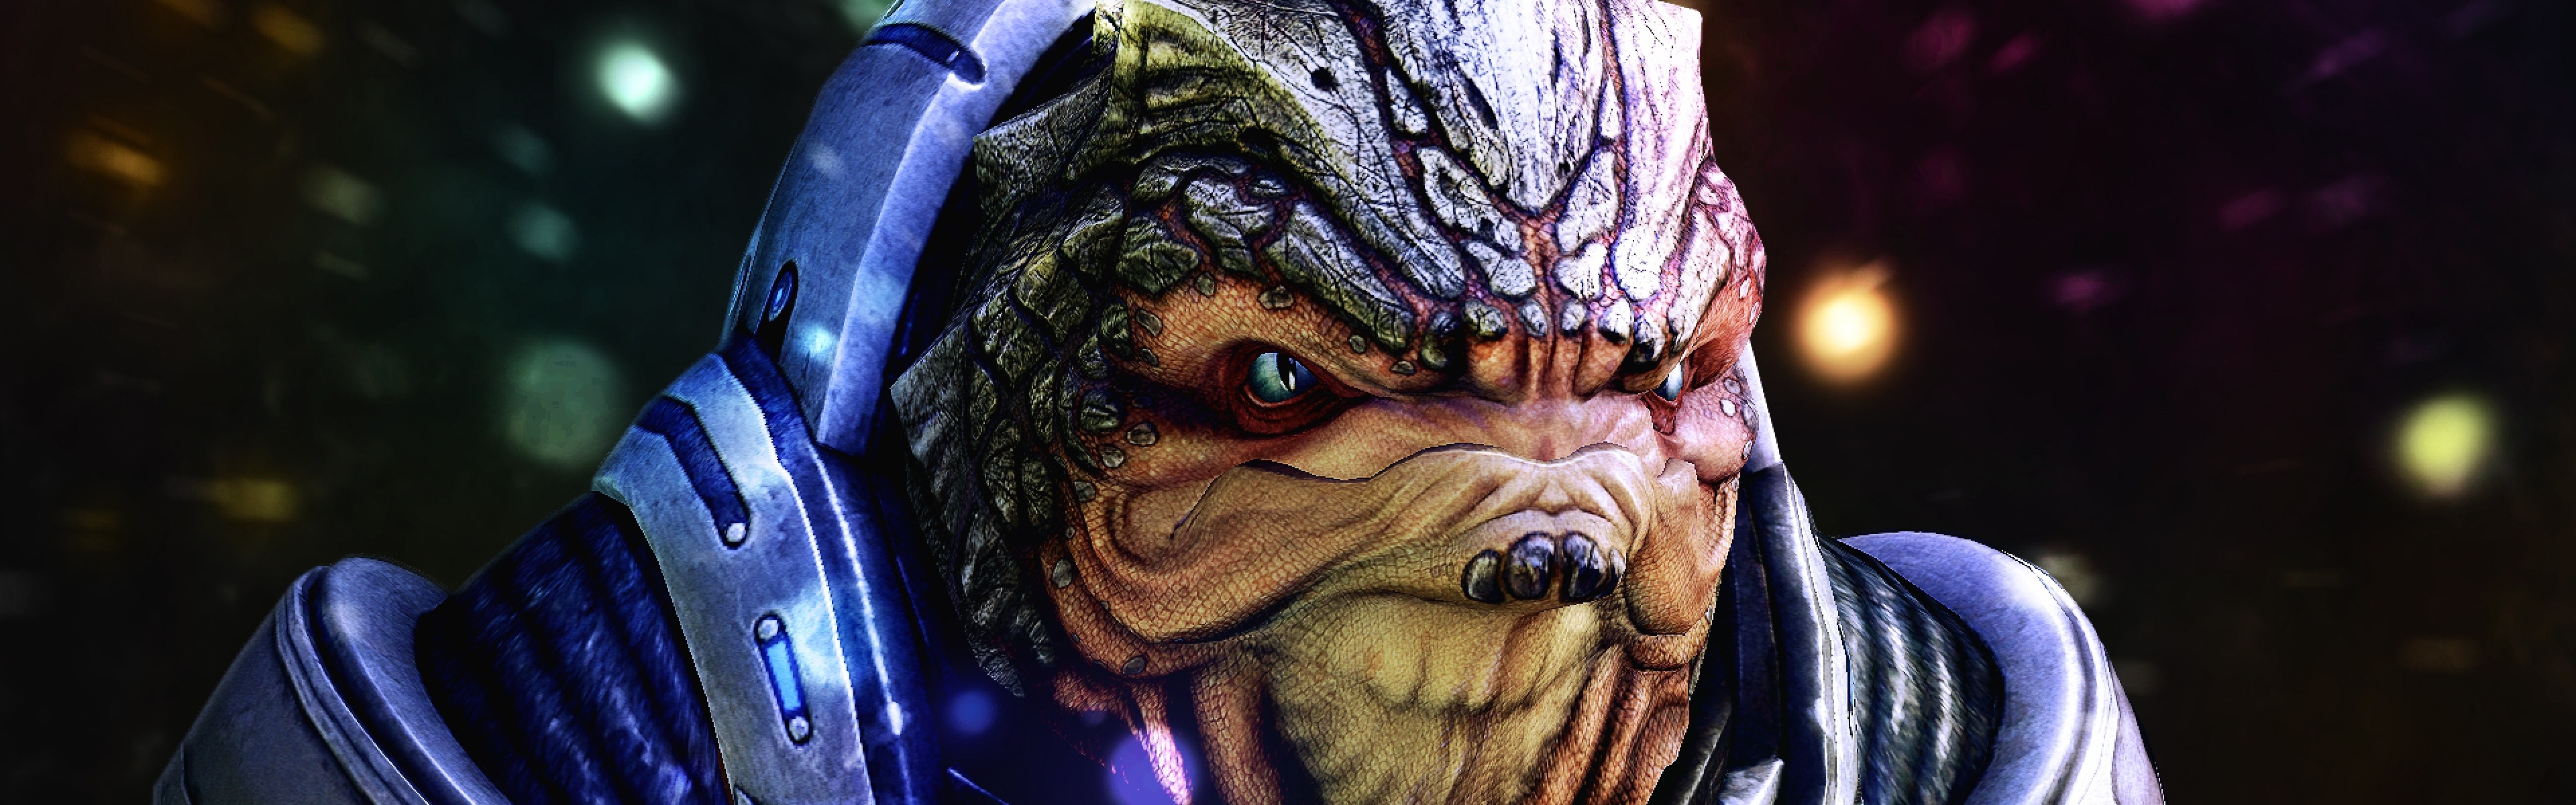 Wallpaper Mass Effect Grunt Face Look Character